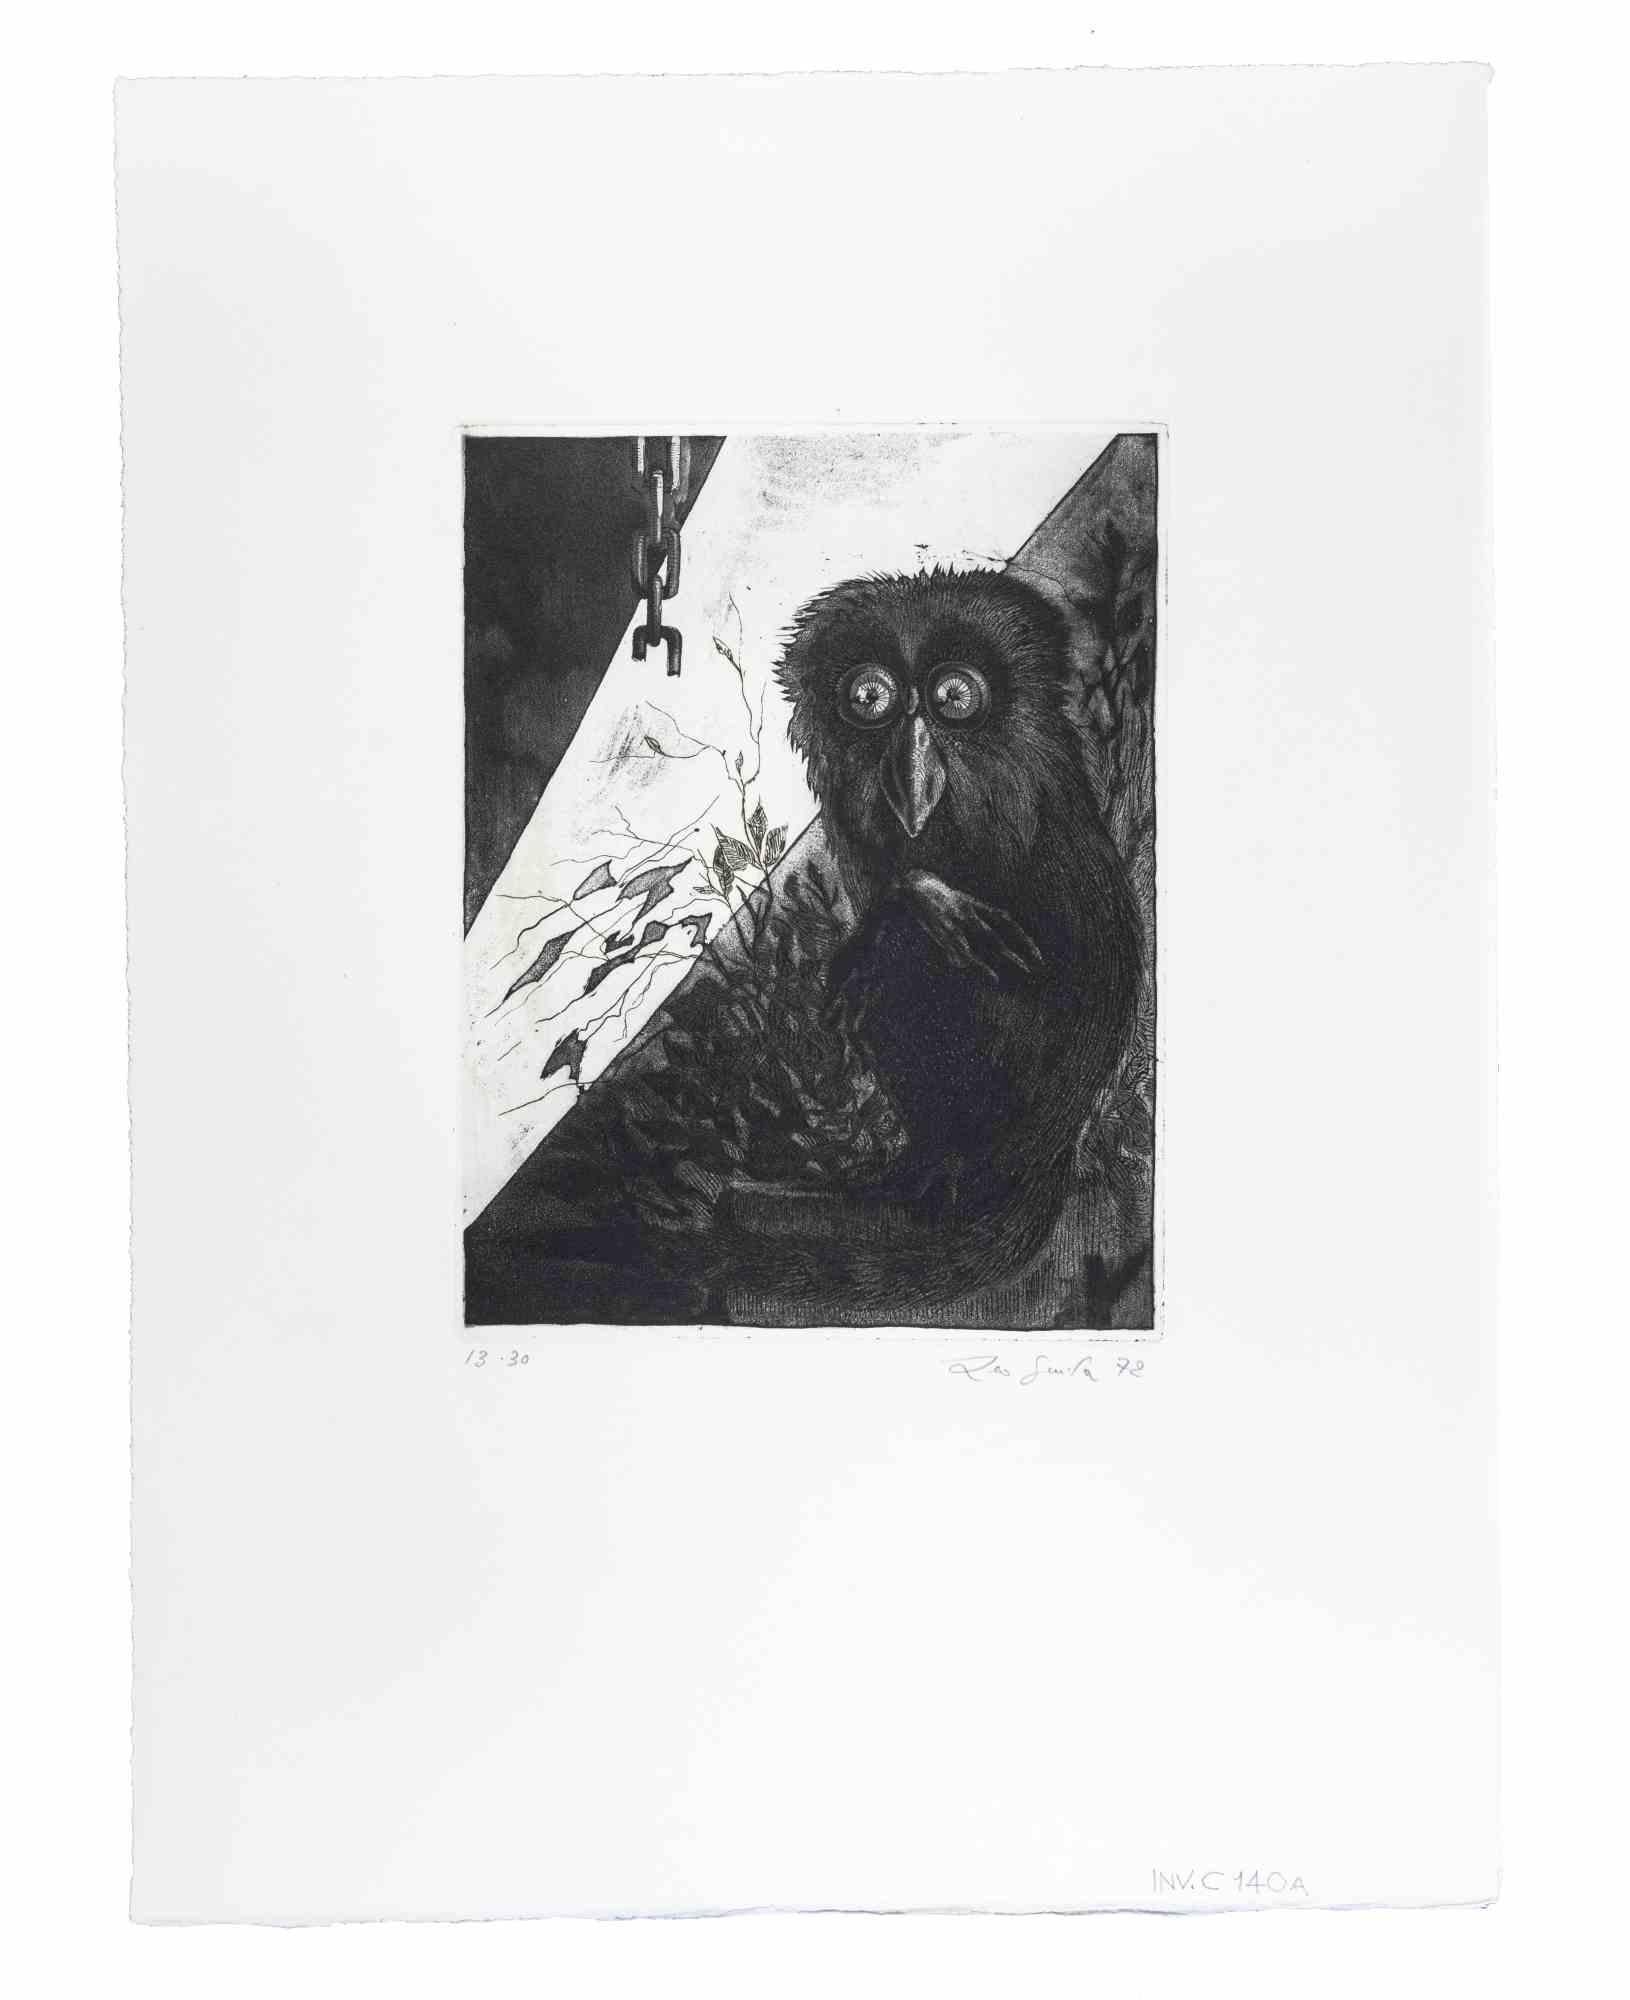 Still Life ist ein Kunstwerk, das 1976 von dem italienischen Künstler AM Contemporary geschaffen wurde.  Leo Guida  (1992 - 2017).

Original-Radierung auf Karton. 

Handsigniert und datiert am unteren rechten Rand und nummeriert, Auflage 13/30, in